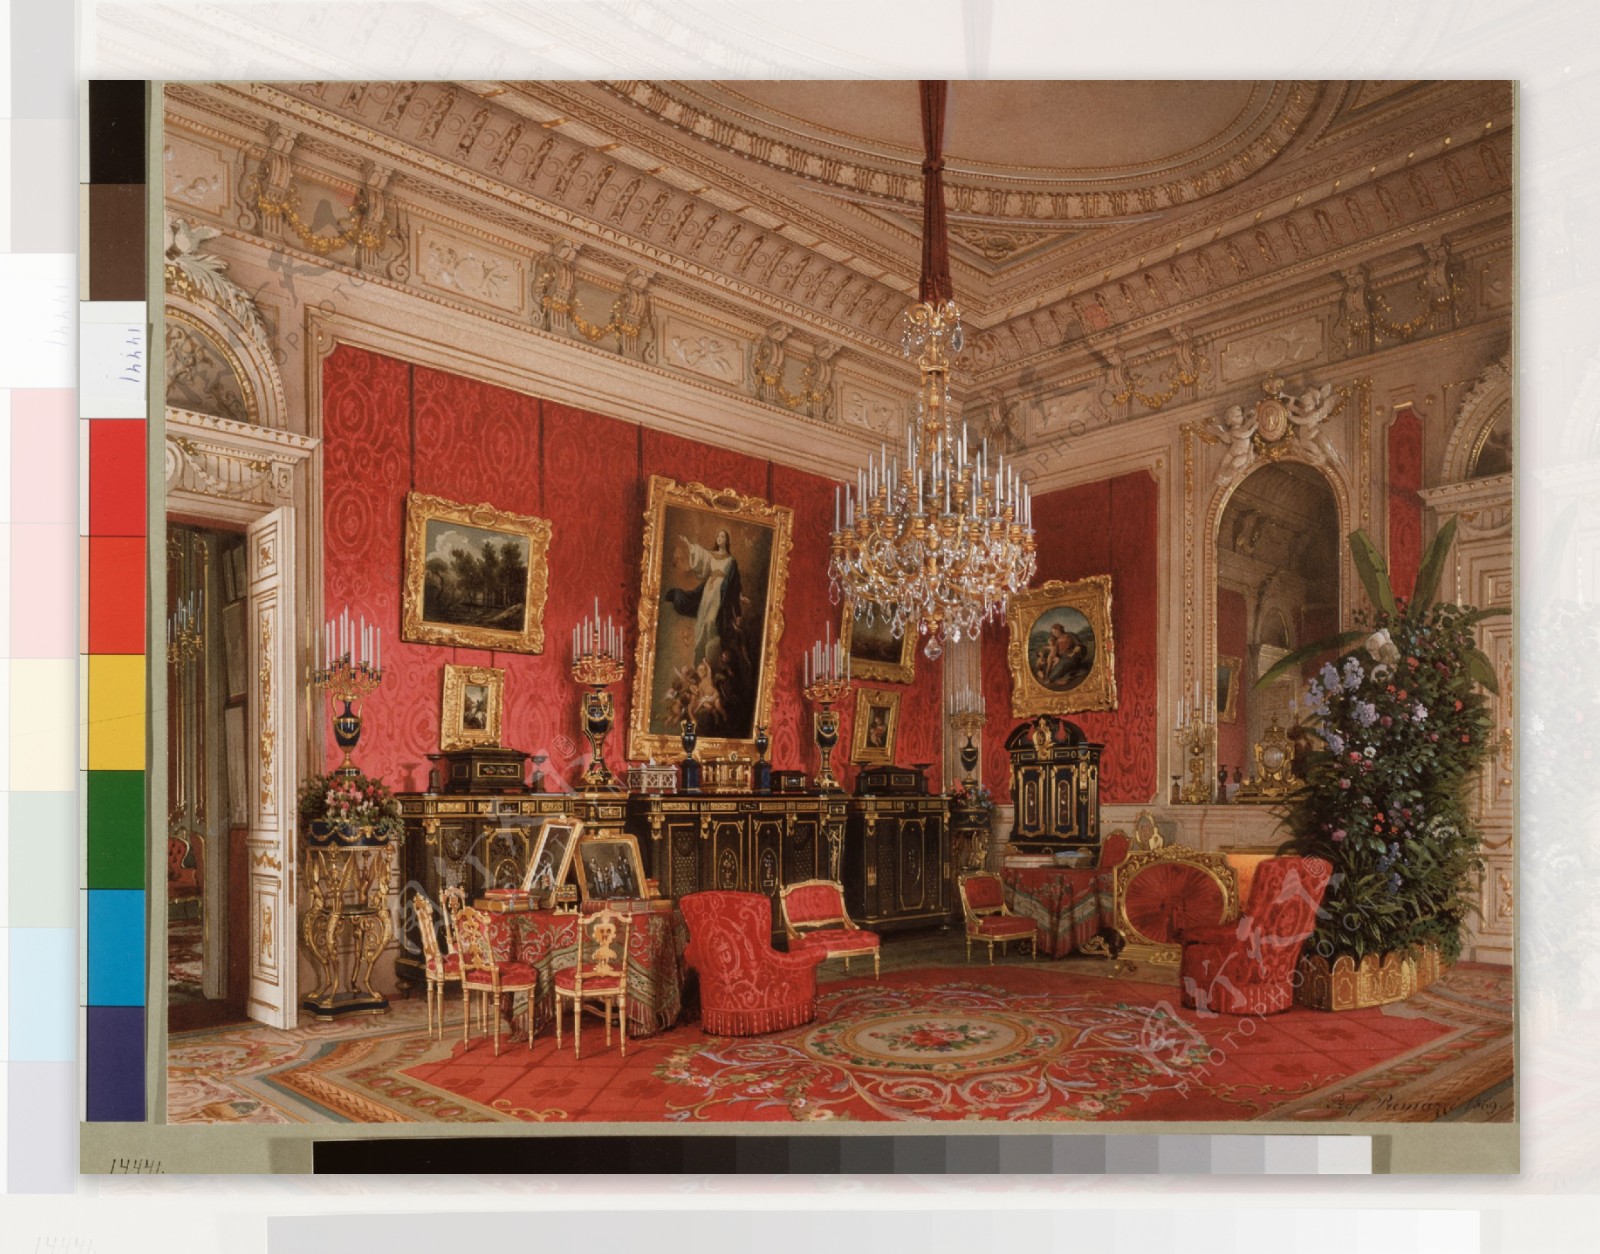 皇后玛丽亚亚历山德罗的书房图片